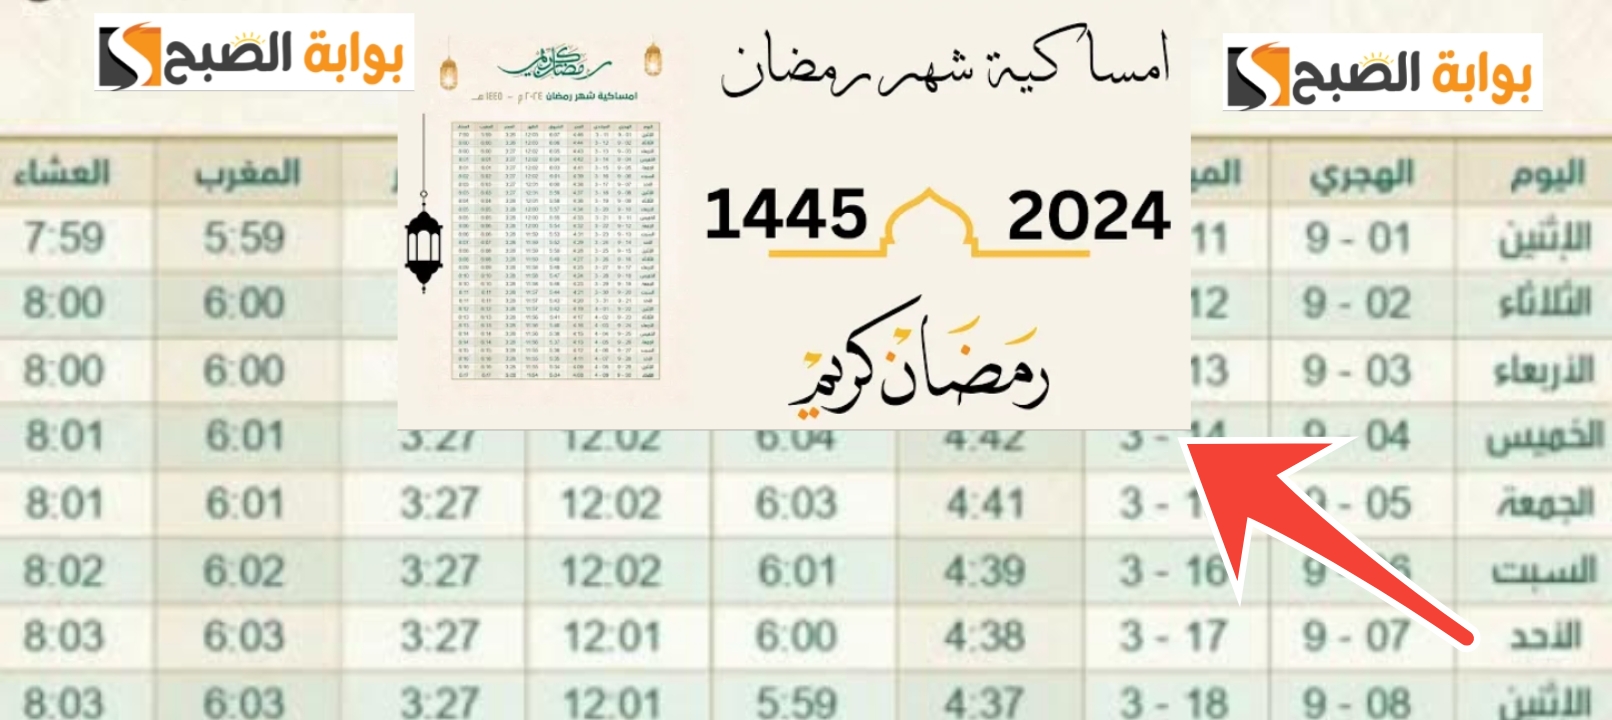 امساكية شهر رمضان 2024 ومواعيد الفطار والسحور في مصر